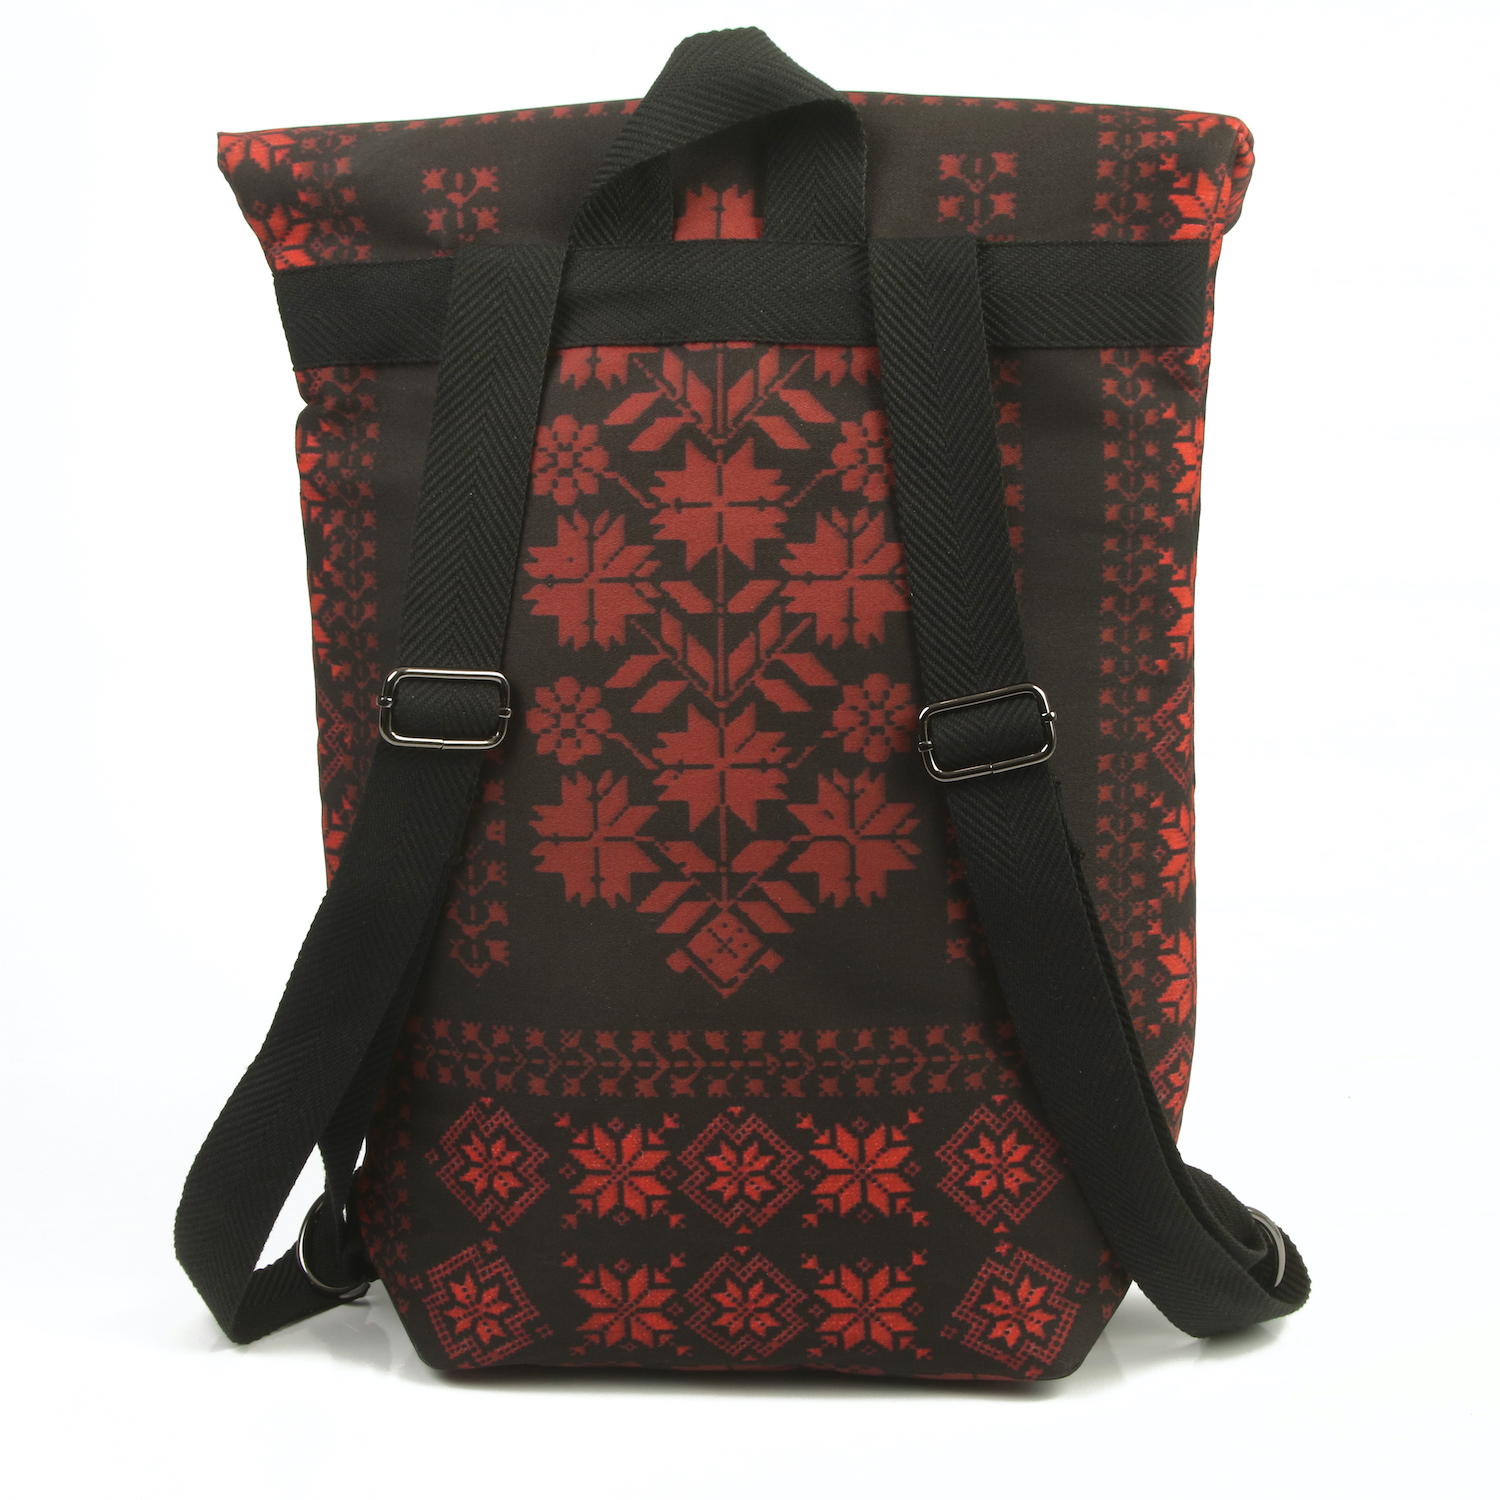 LazyDayz Designs Backpack γυναικείος σάκος πλάτης χειροποίητος bb0802c